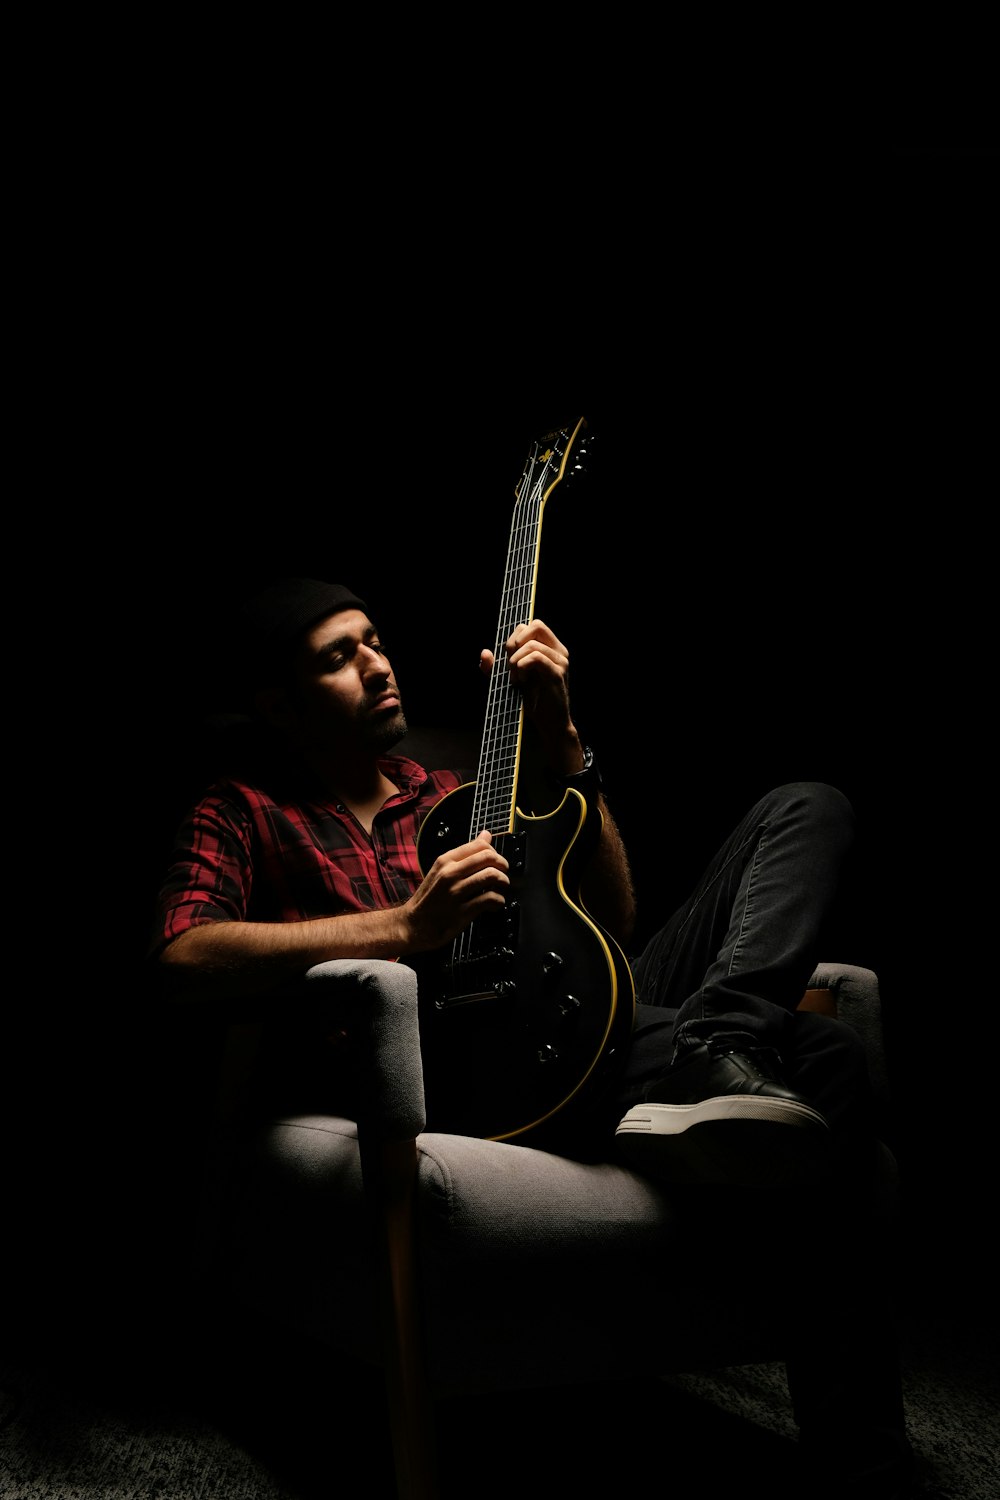 Un uomo che suona una chitarra